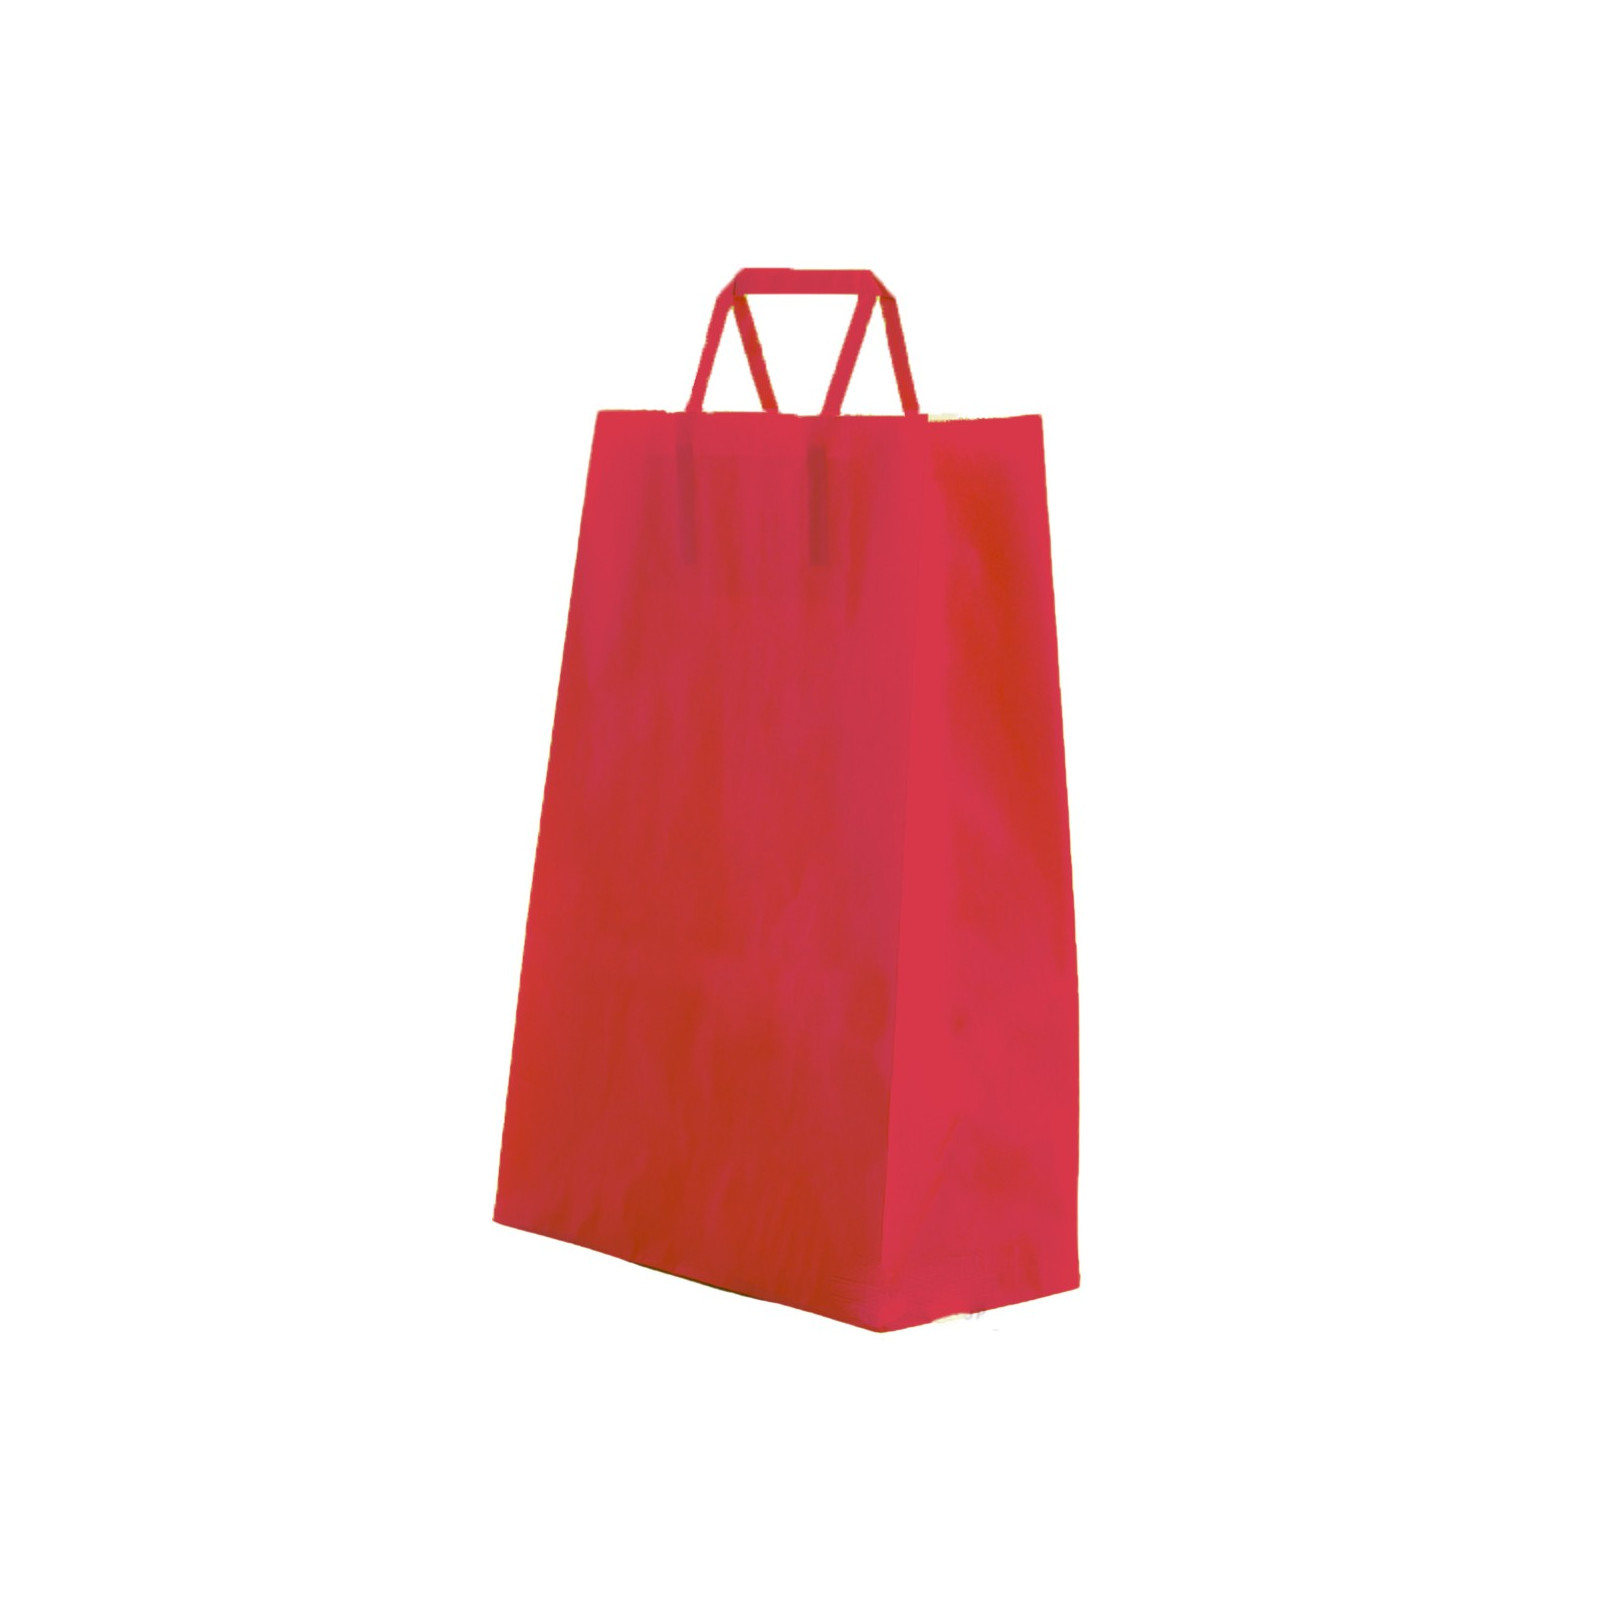 Bolsa de papel celulosa color roja con asa plana